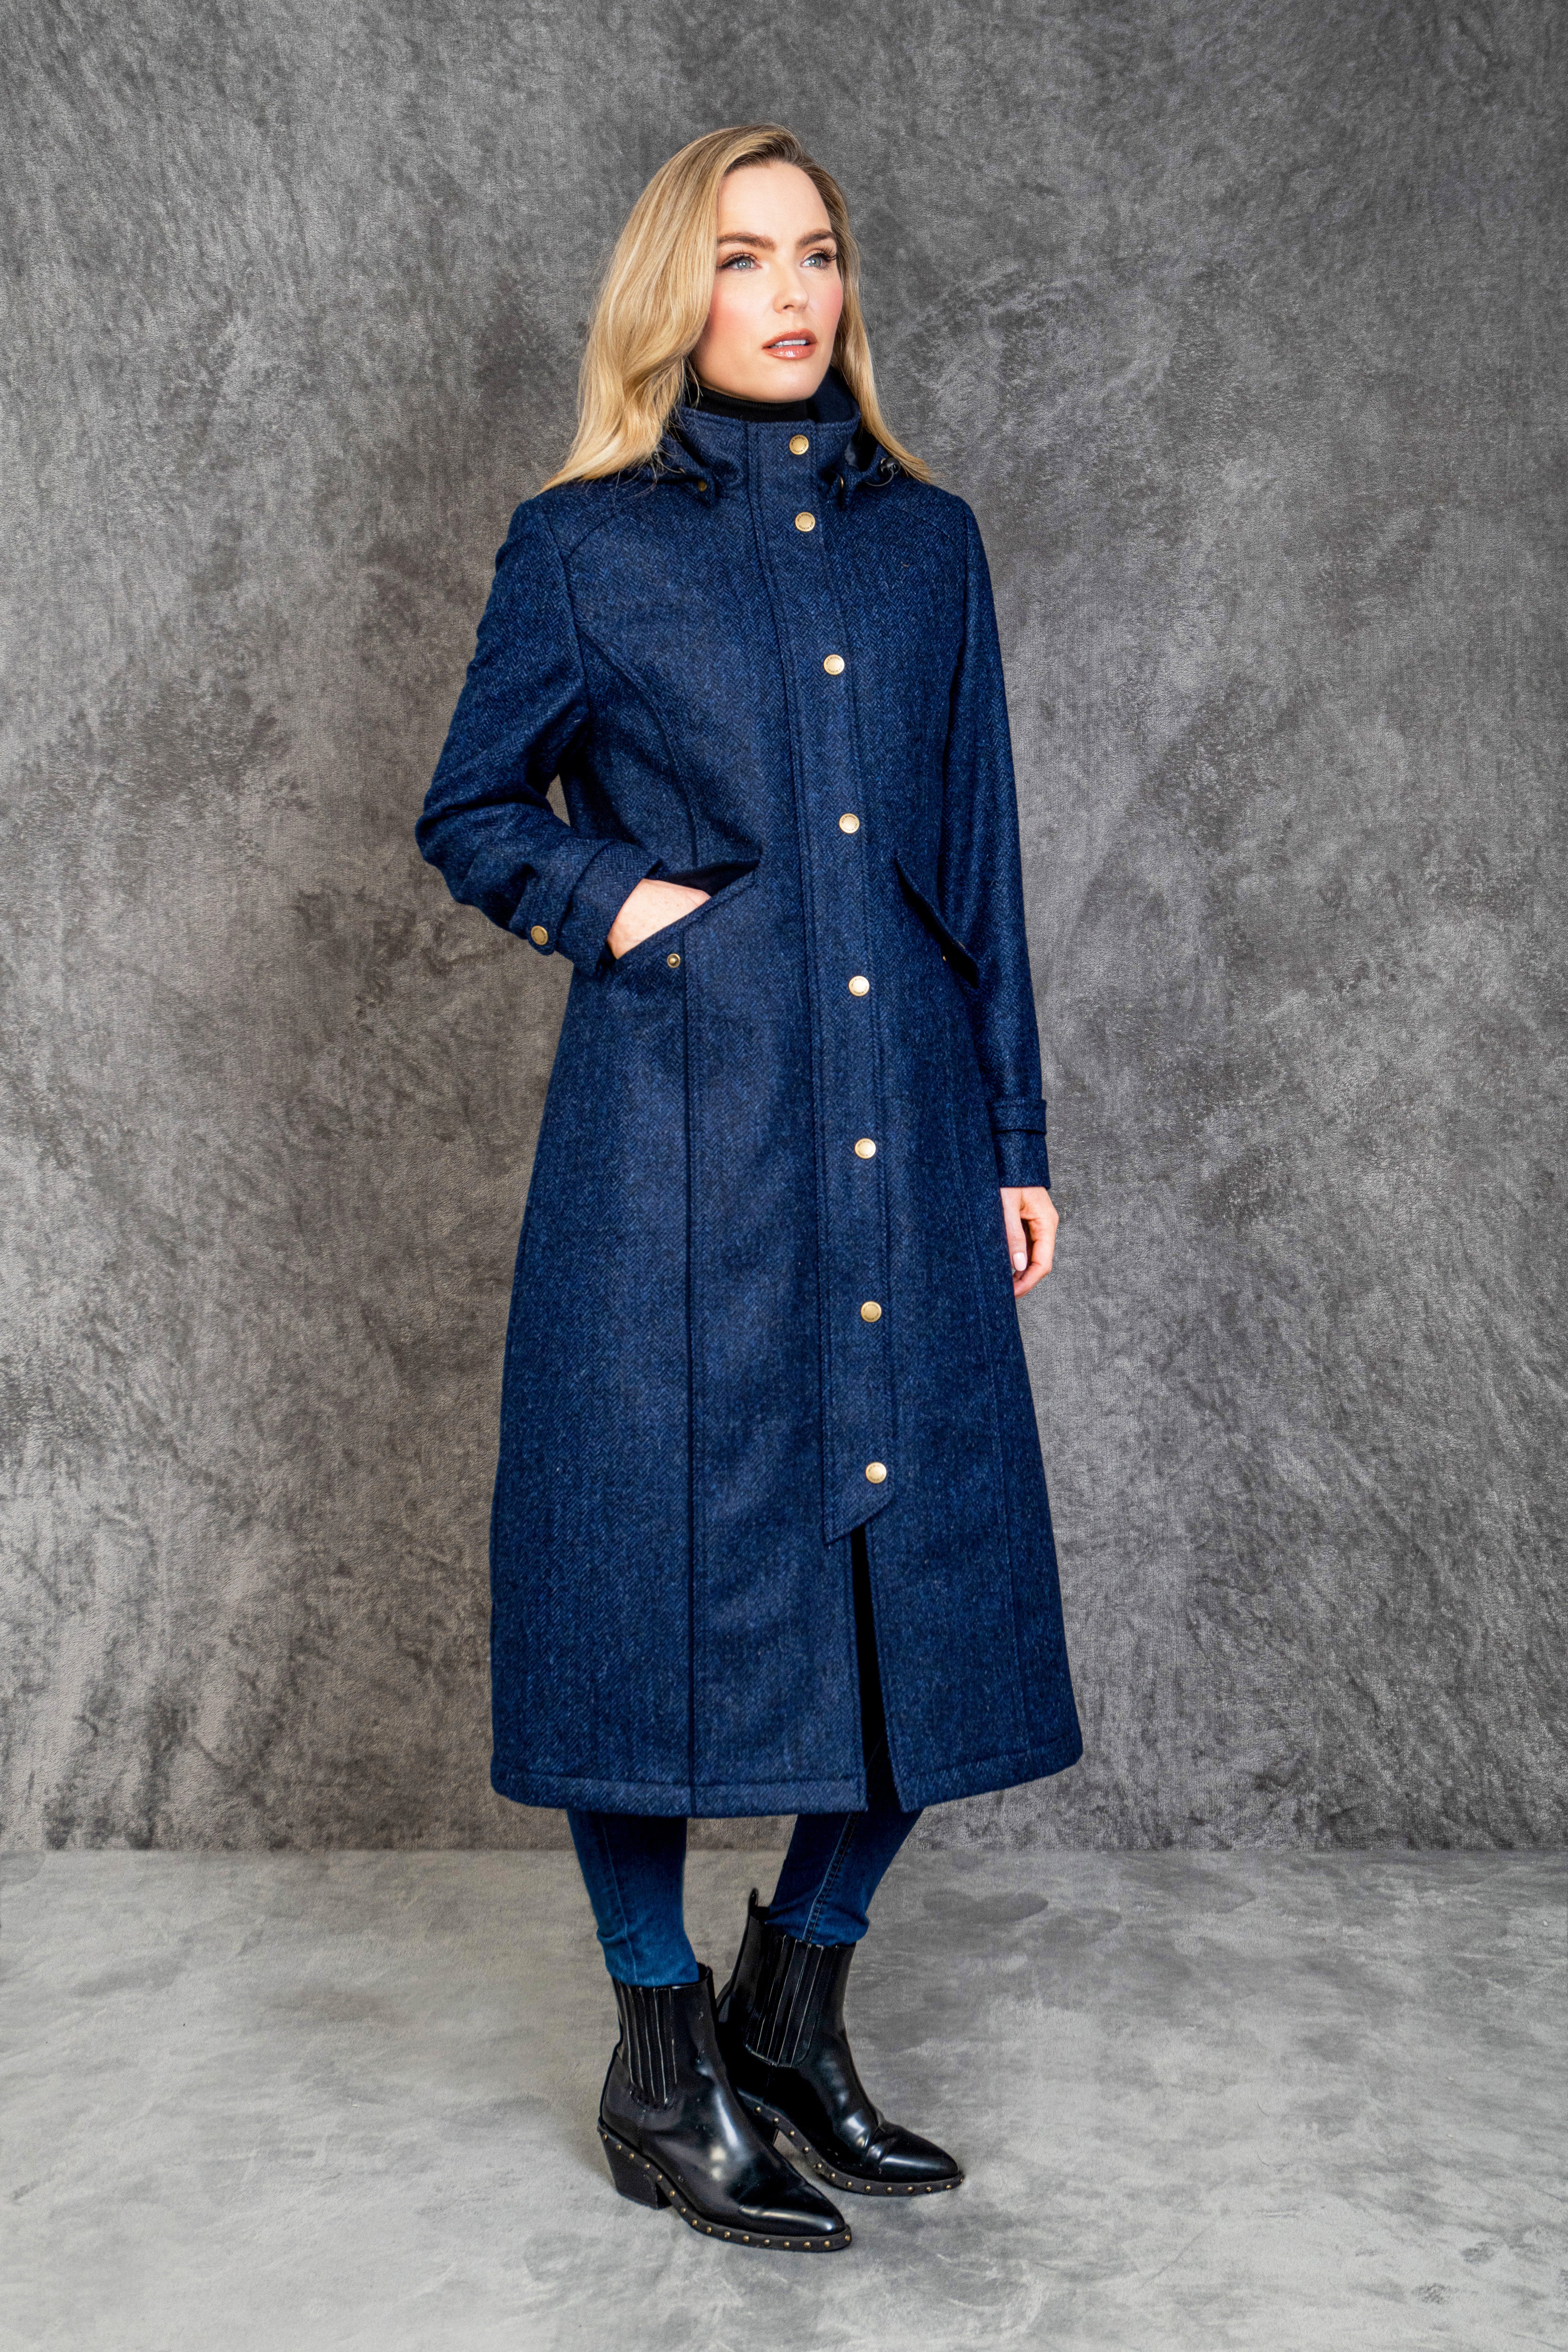 Julia Long Tweed Coat - Navy Herringbone